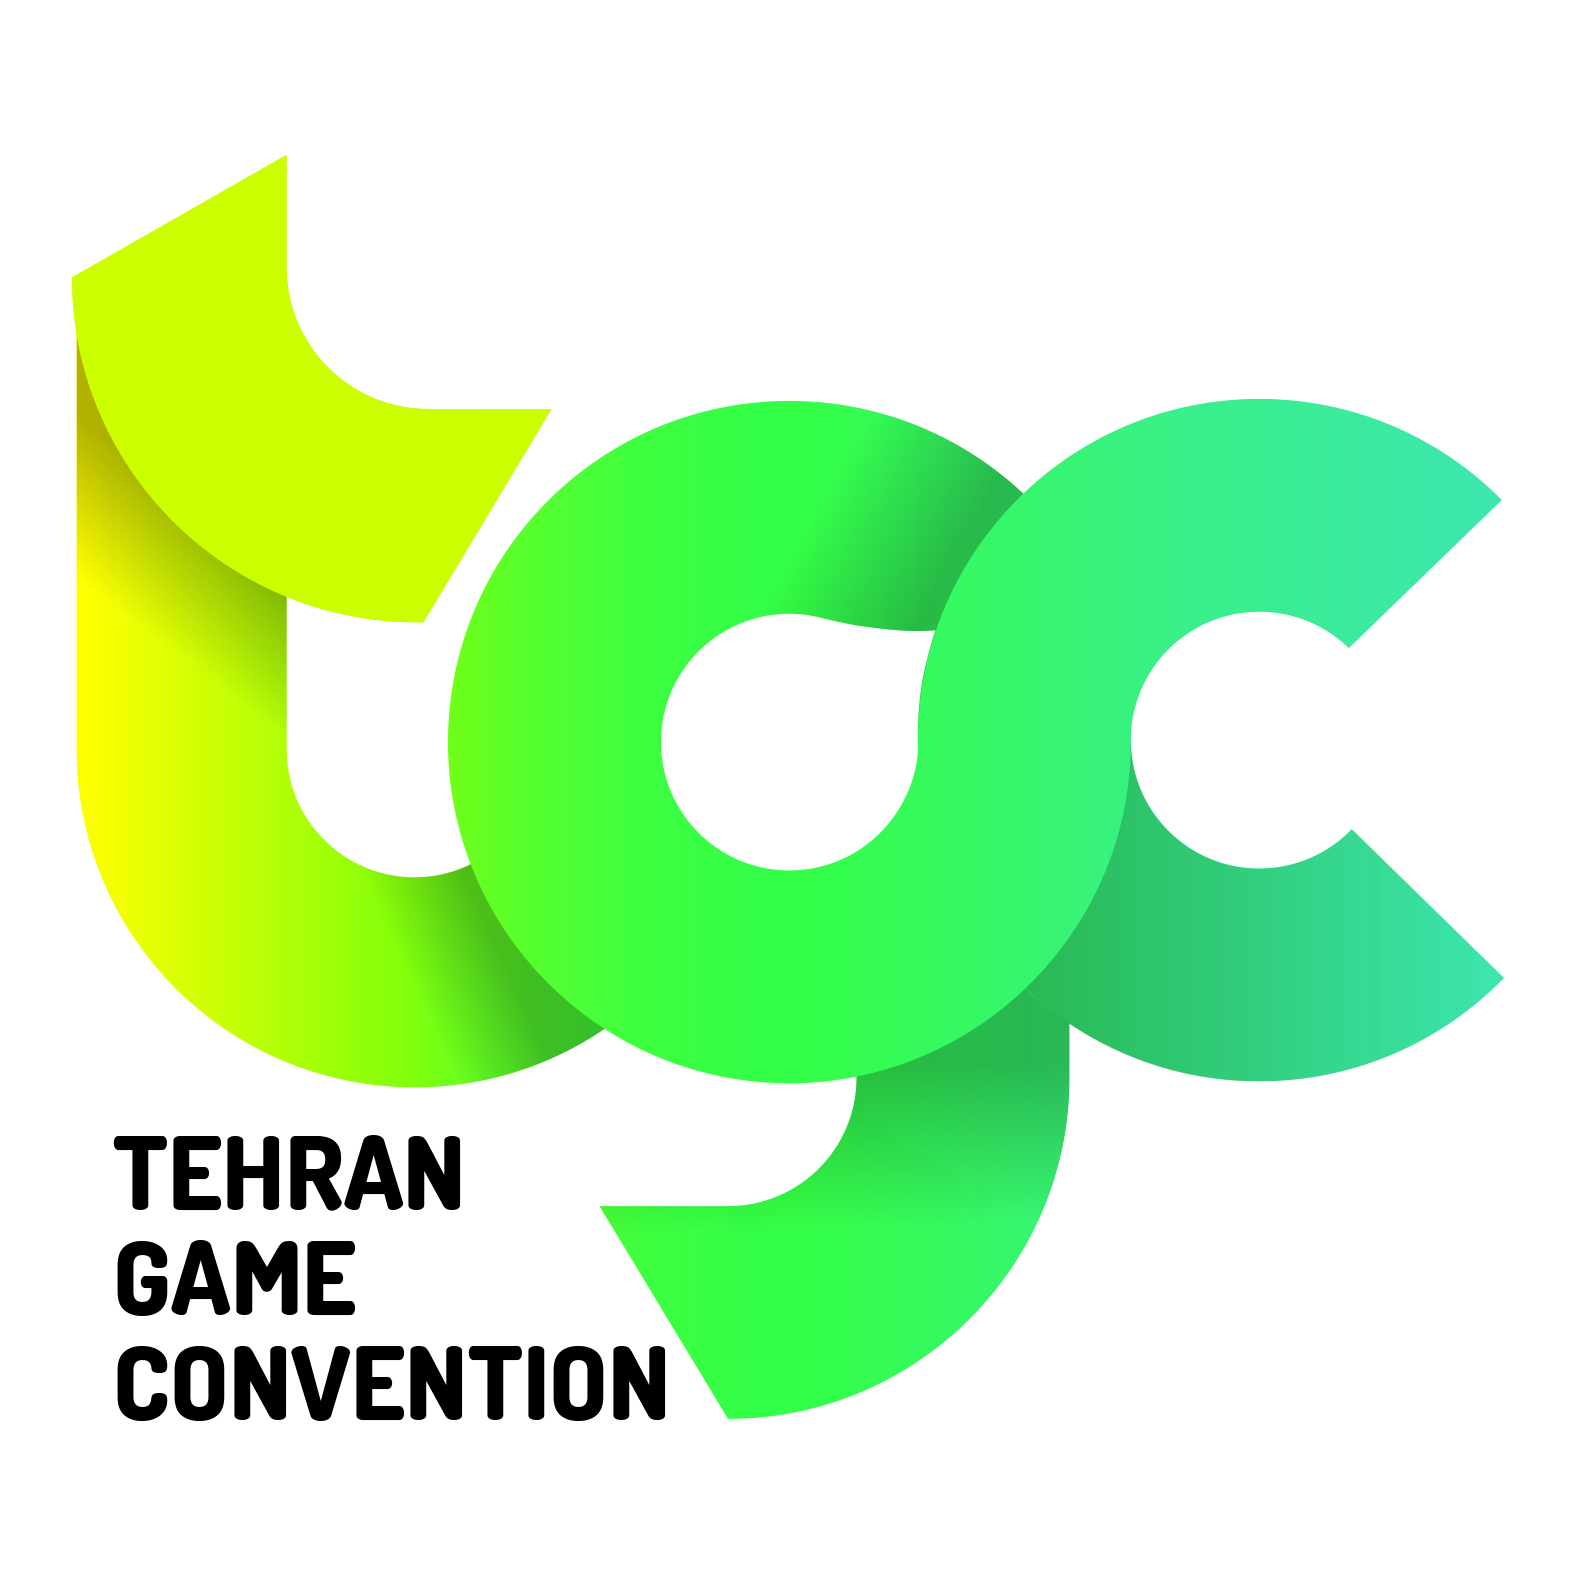 بیانیه آریا اسرافیلیان، دبیر بخش جایزه توسعه دهندگان TGC، برای رفع ابهامات بازی های برتر